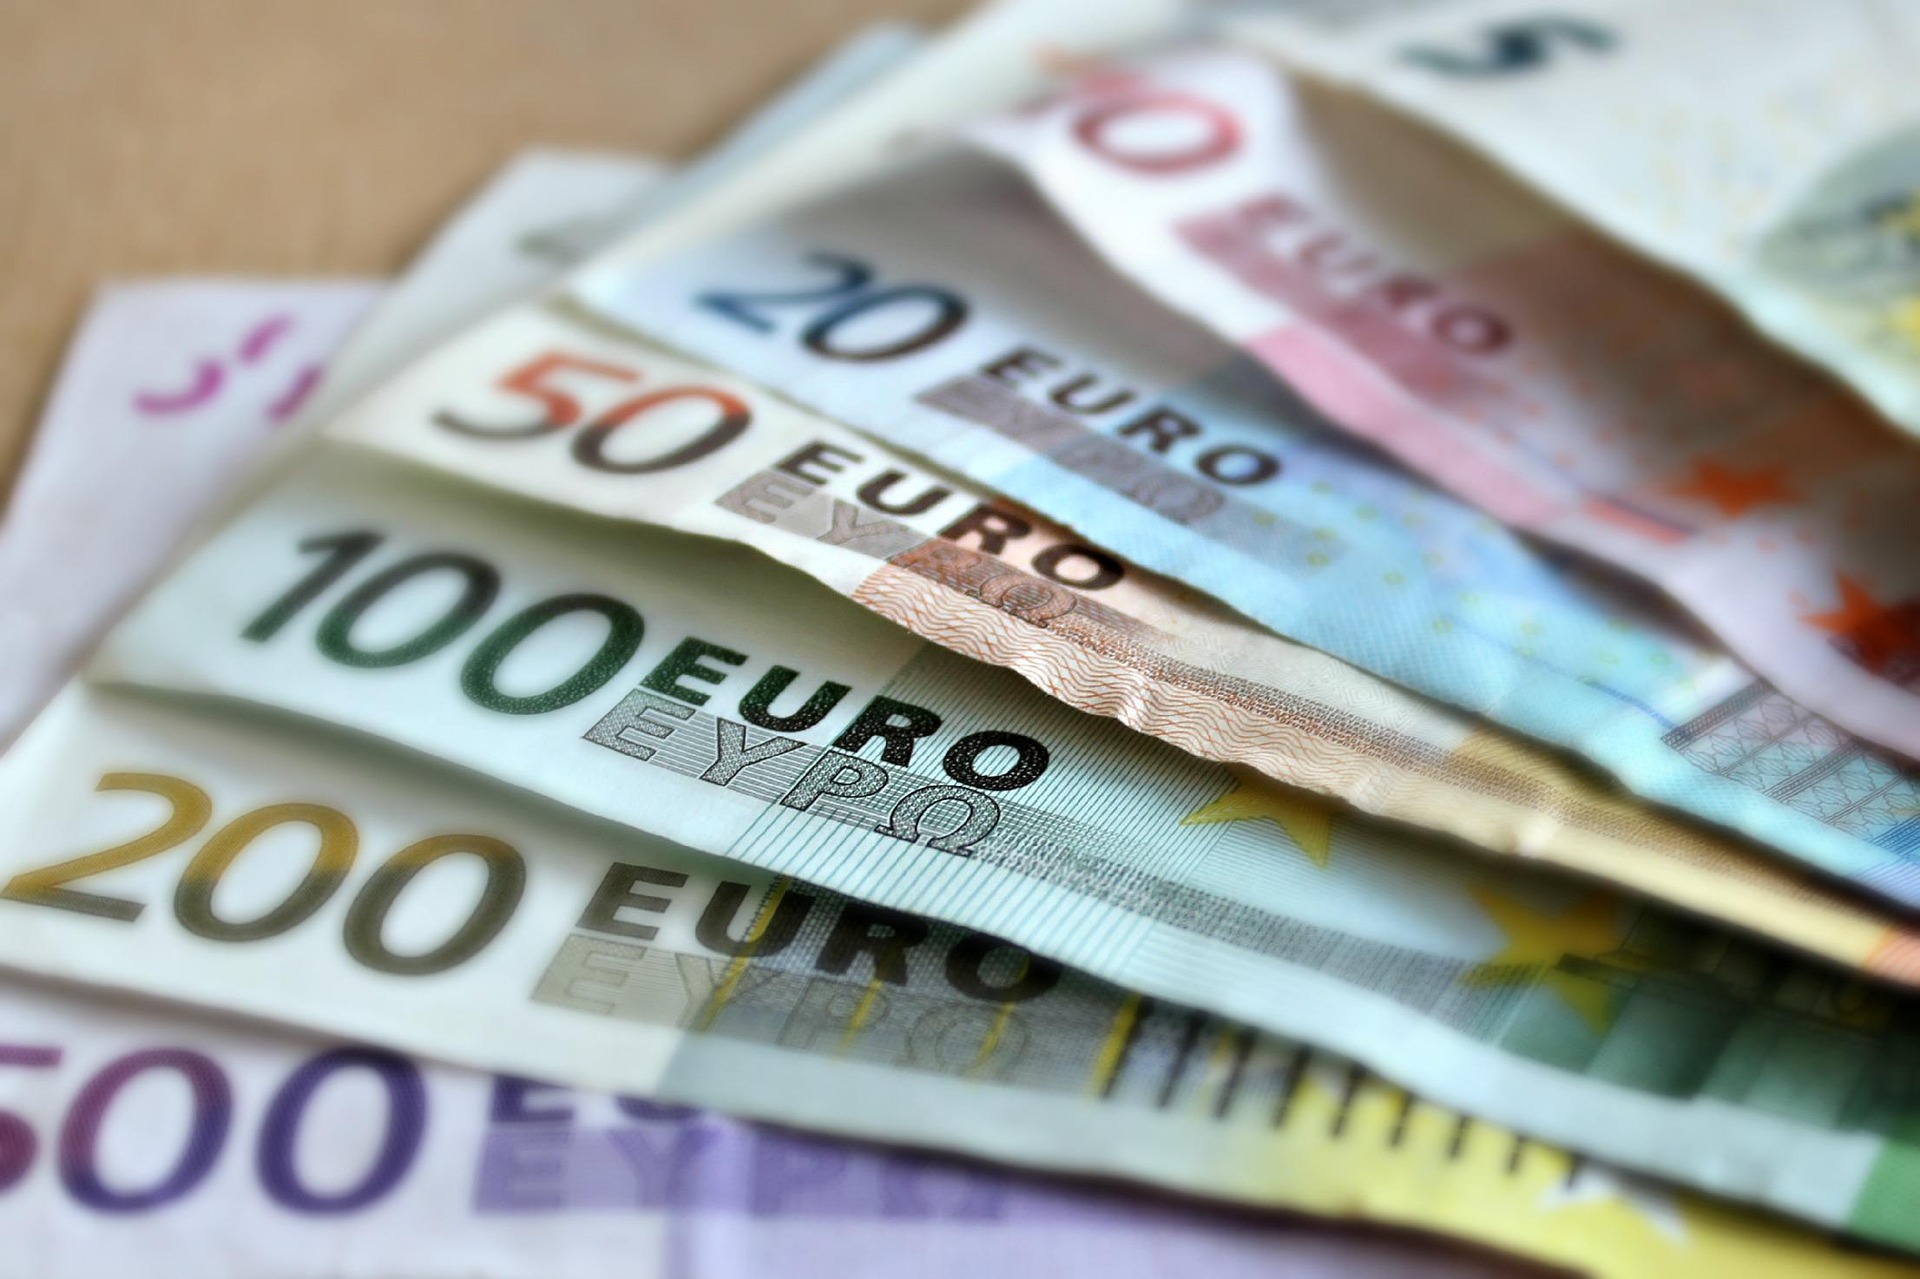 eu funds money euro